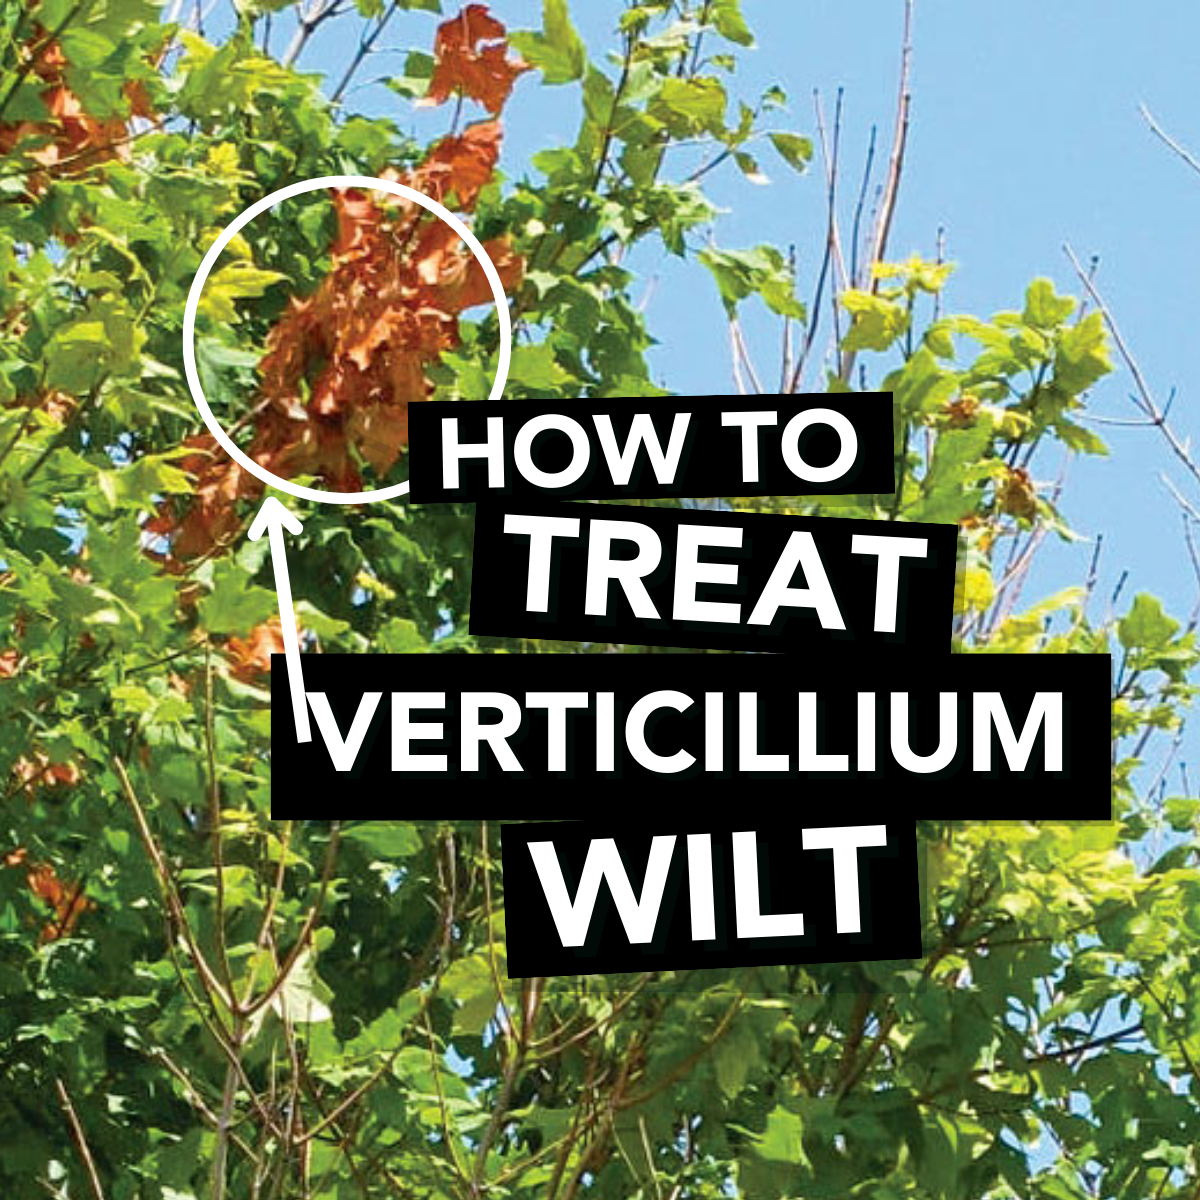 How to Treat Verticillium Wilt